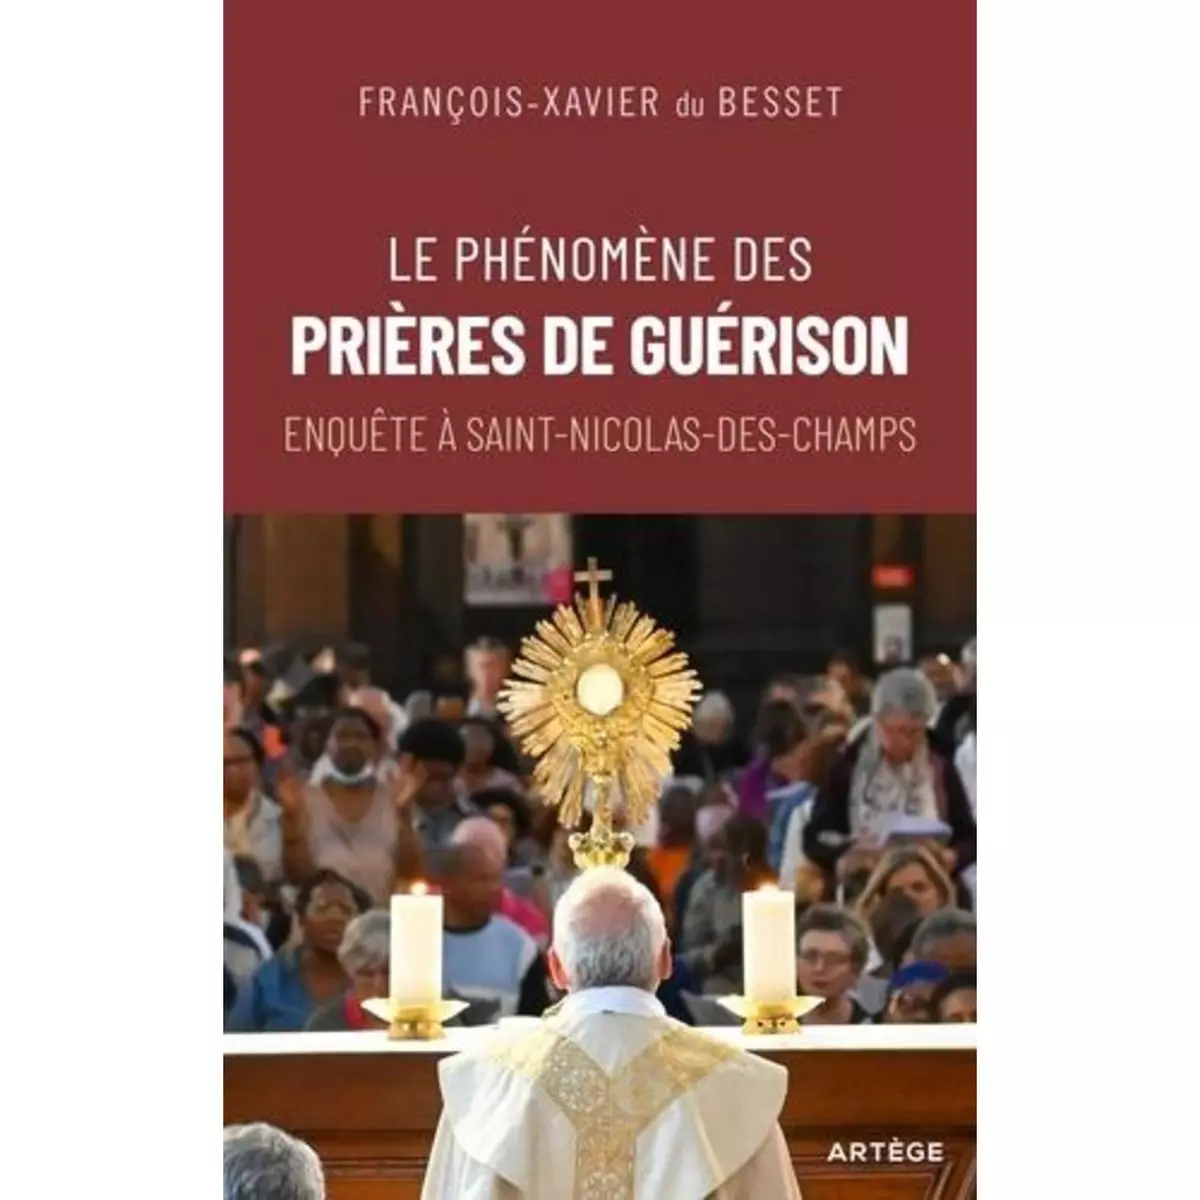  LE PHENOMENE DES PRIERES DE GUERISON. ENQUETE A SAINT-NICOLAS-DES-CHAMPS, Besset François-Xavier du